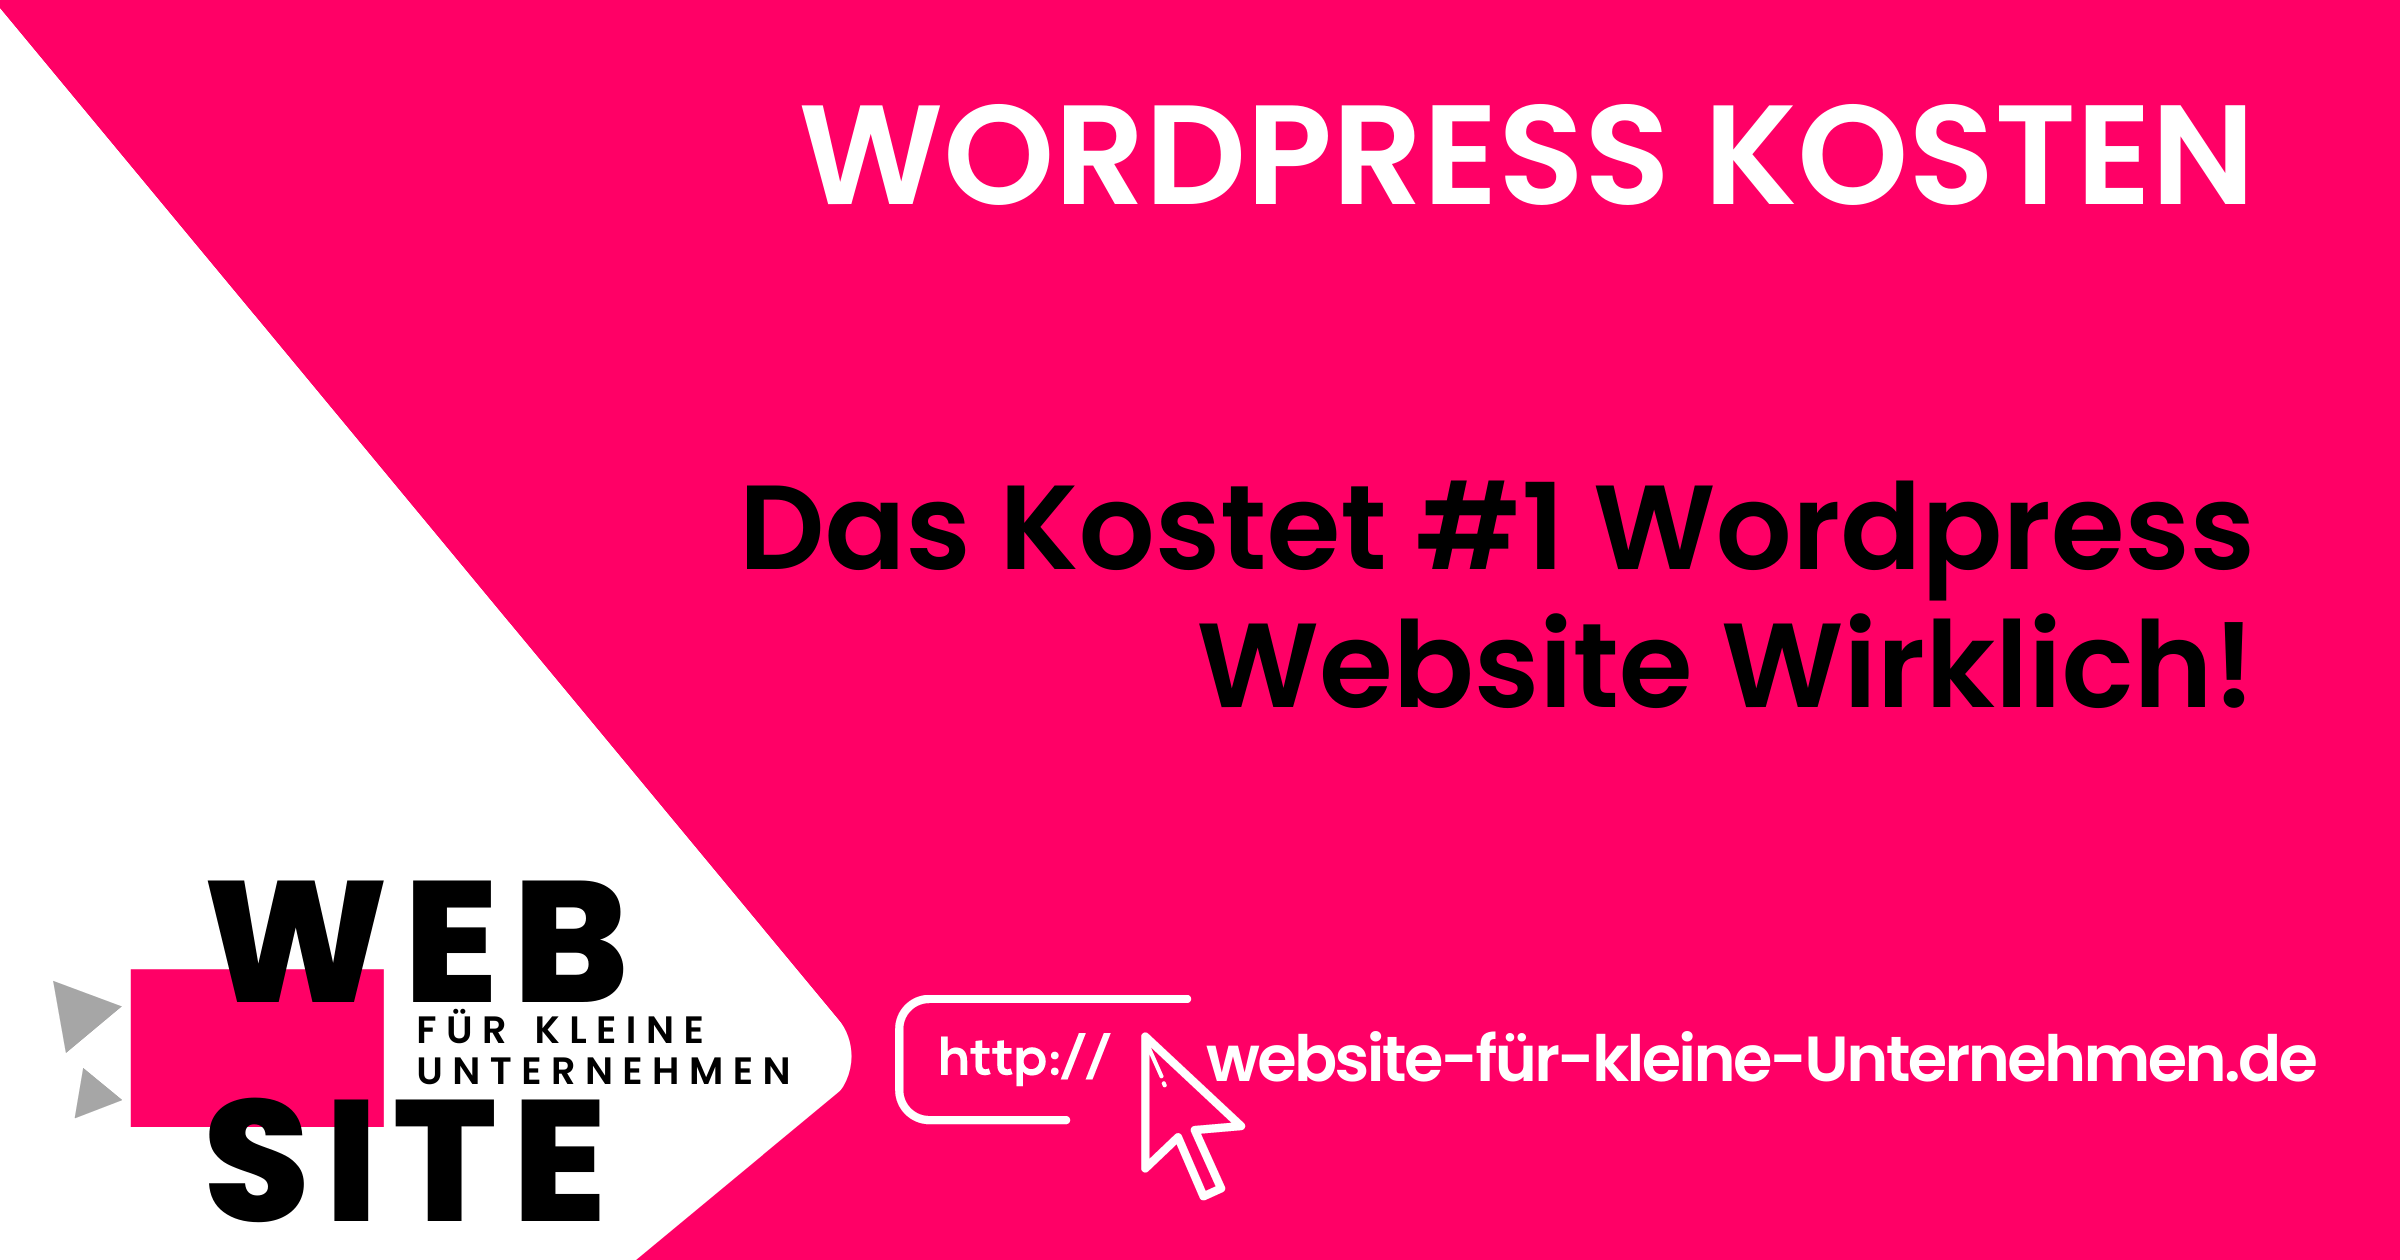 Wordpress Kosten - Website für kleine Unternehmen - Featured Image